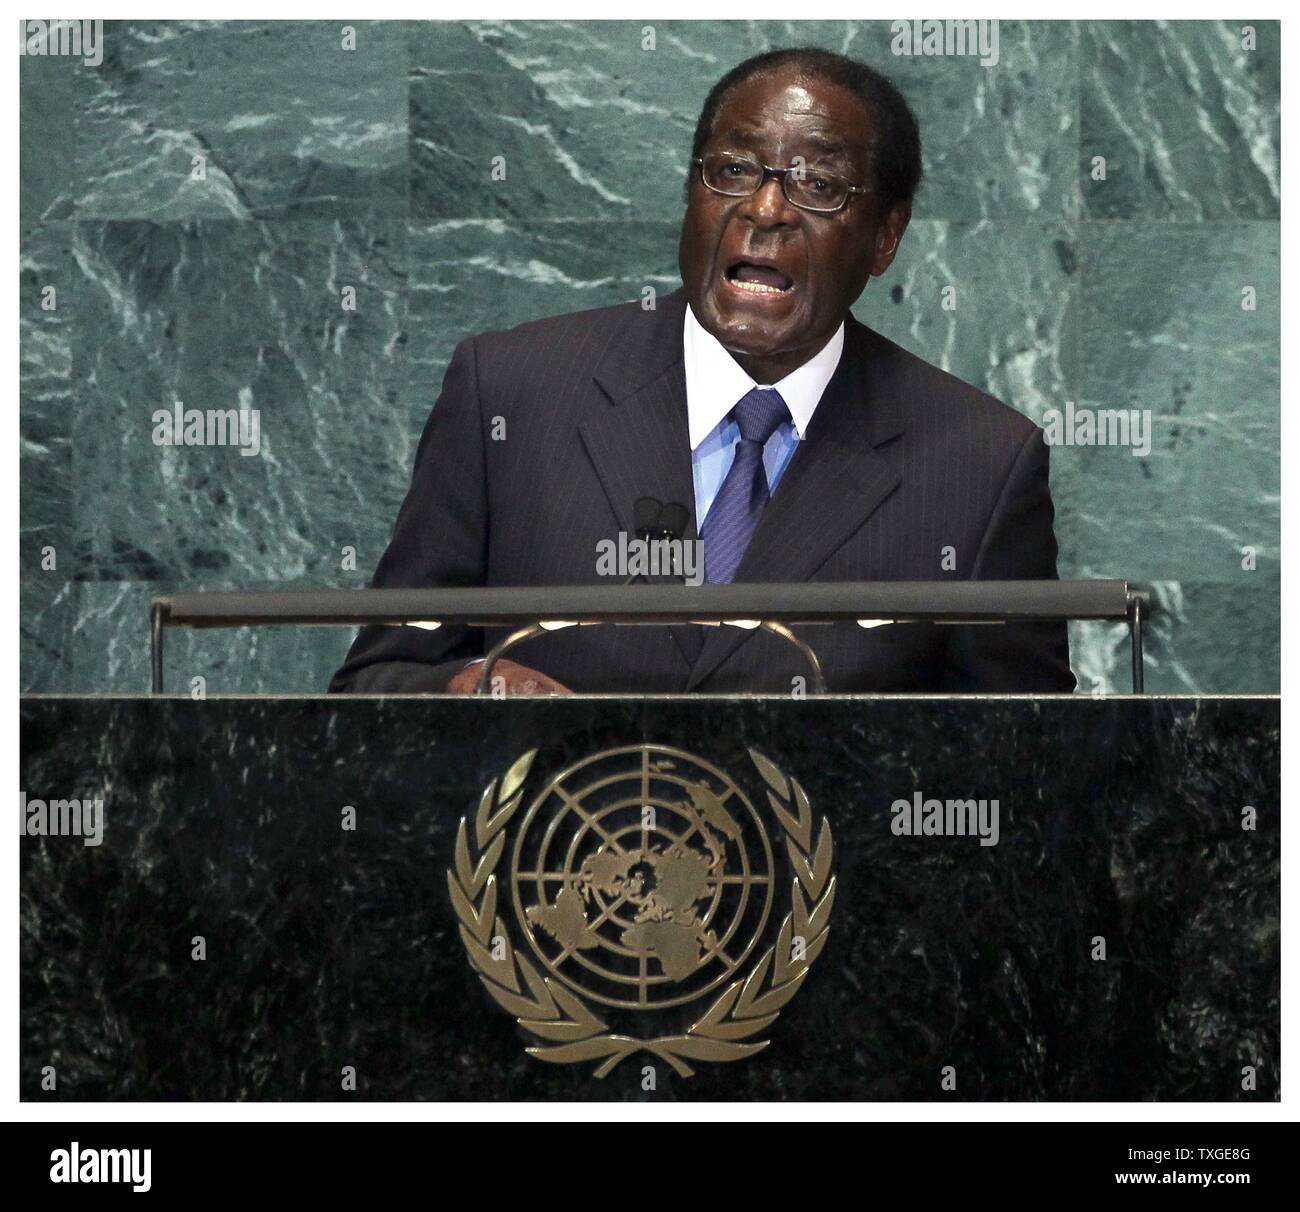 Photographie du Président Robert Gabriel Mugabe du Zimbabwe (1924-) Chef de la Zimbabwe African National Union-Patriotic Front. Datée 2014 Banque D'Images